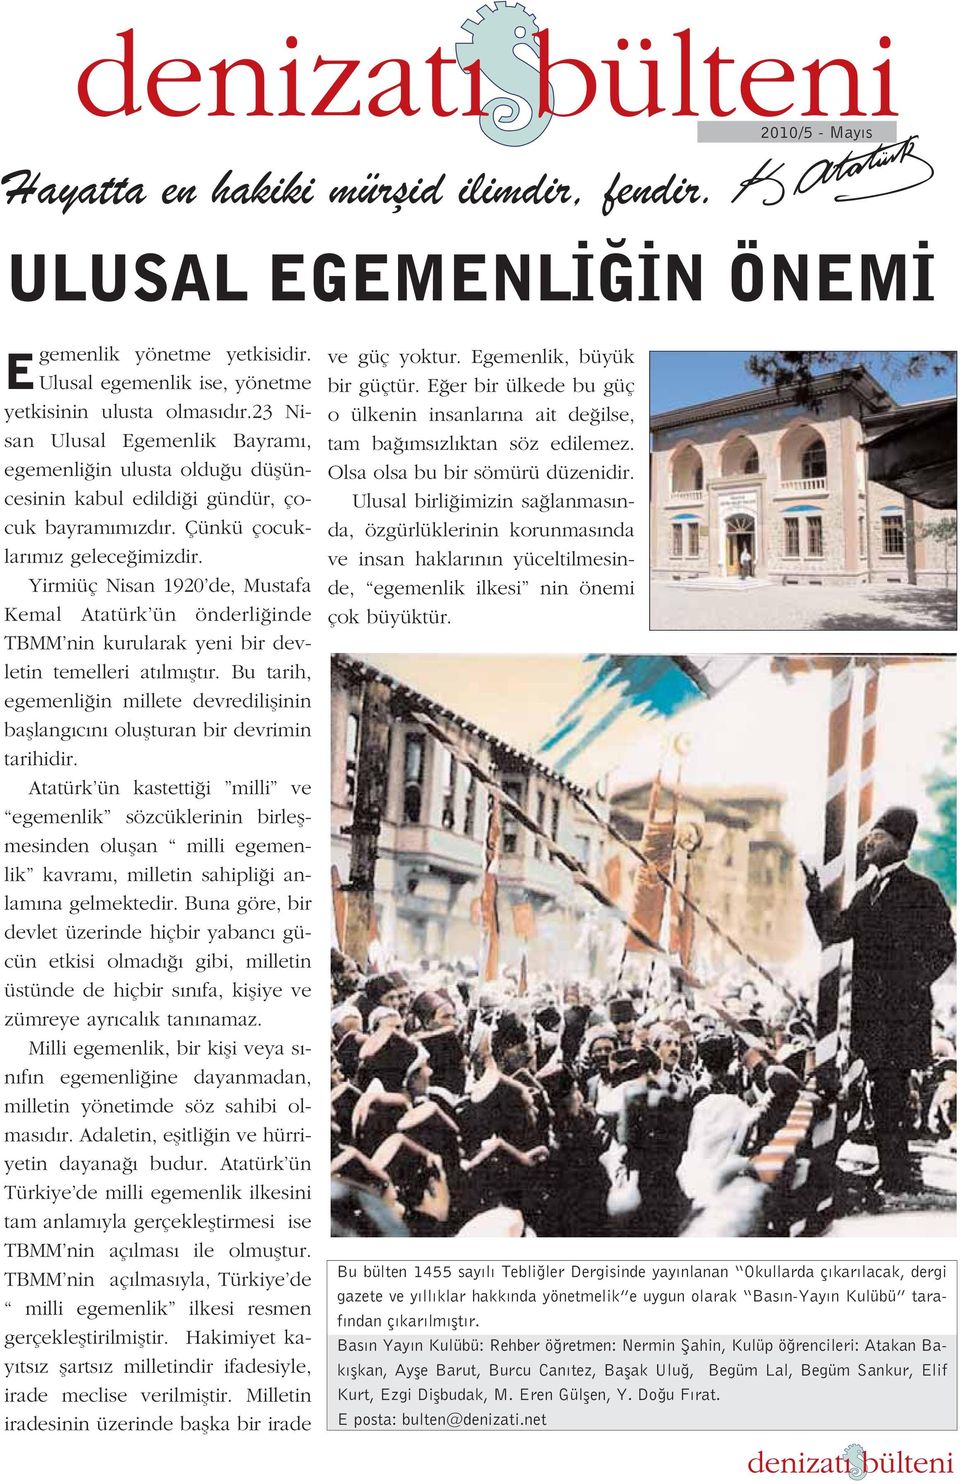 Yirmiüç Nisan 1920 de, Mustafa Kemal Atatürk ün önderli inde TBMM nin kurularak yeni bir devletin temelleri at lm flt r.